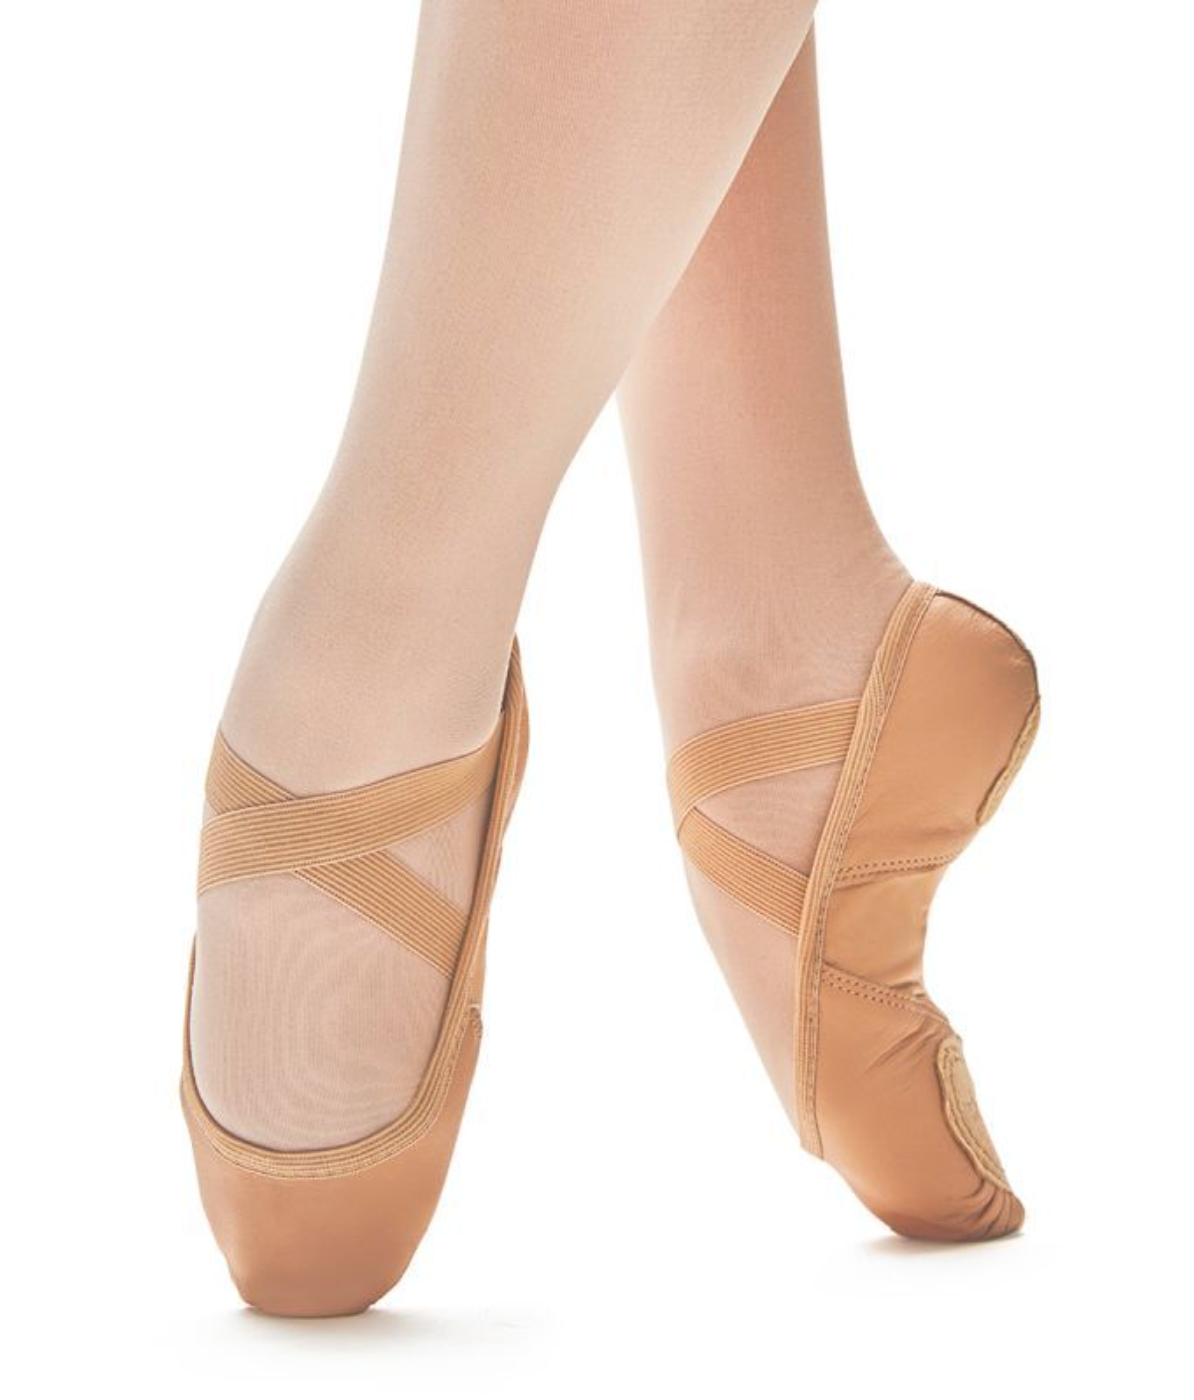 SoDanca Briar Leather Split Sole Ballet Shoes SD110 Pink